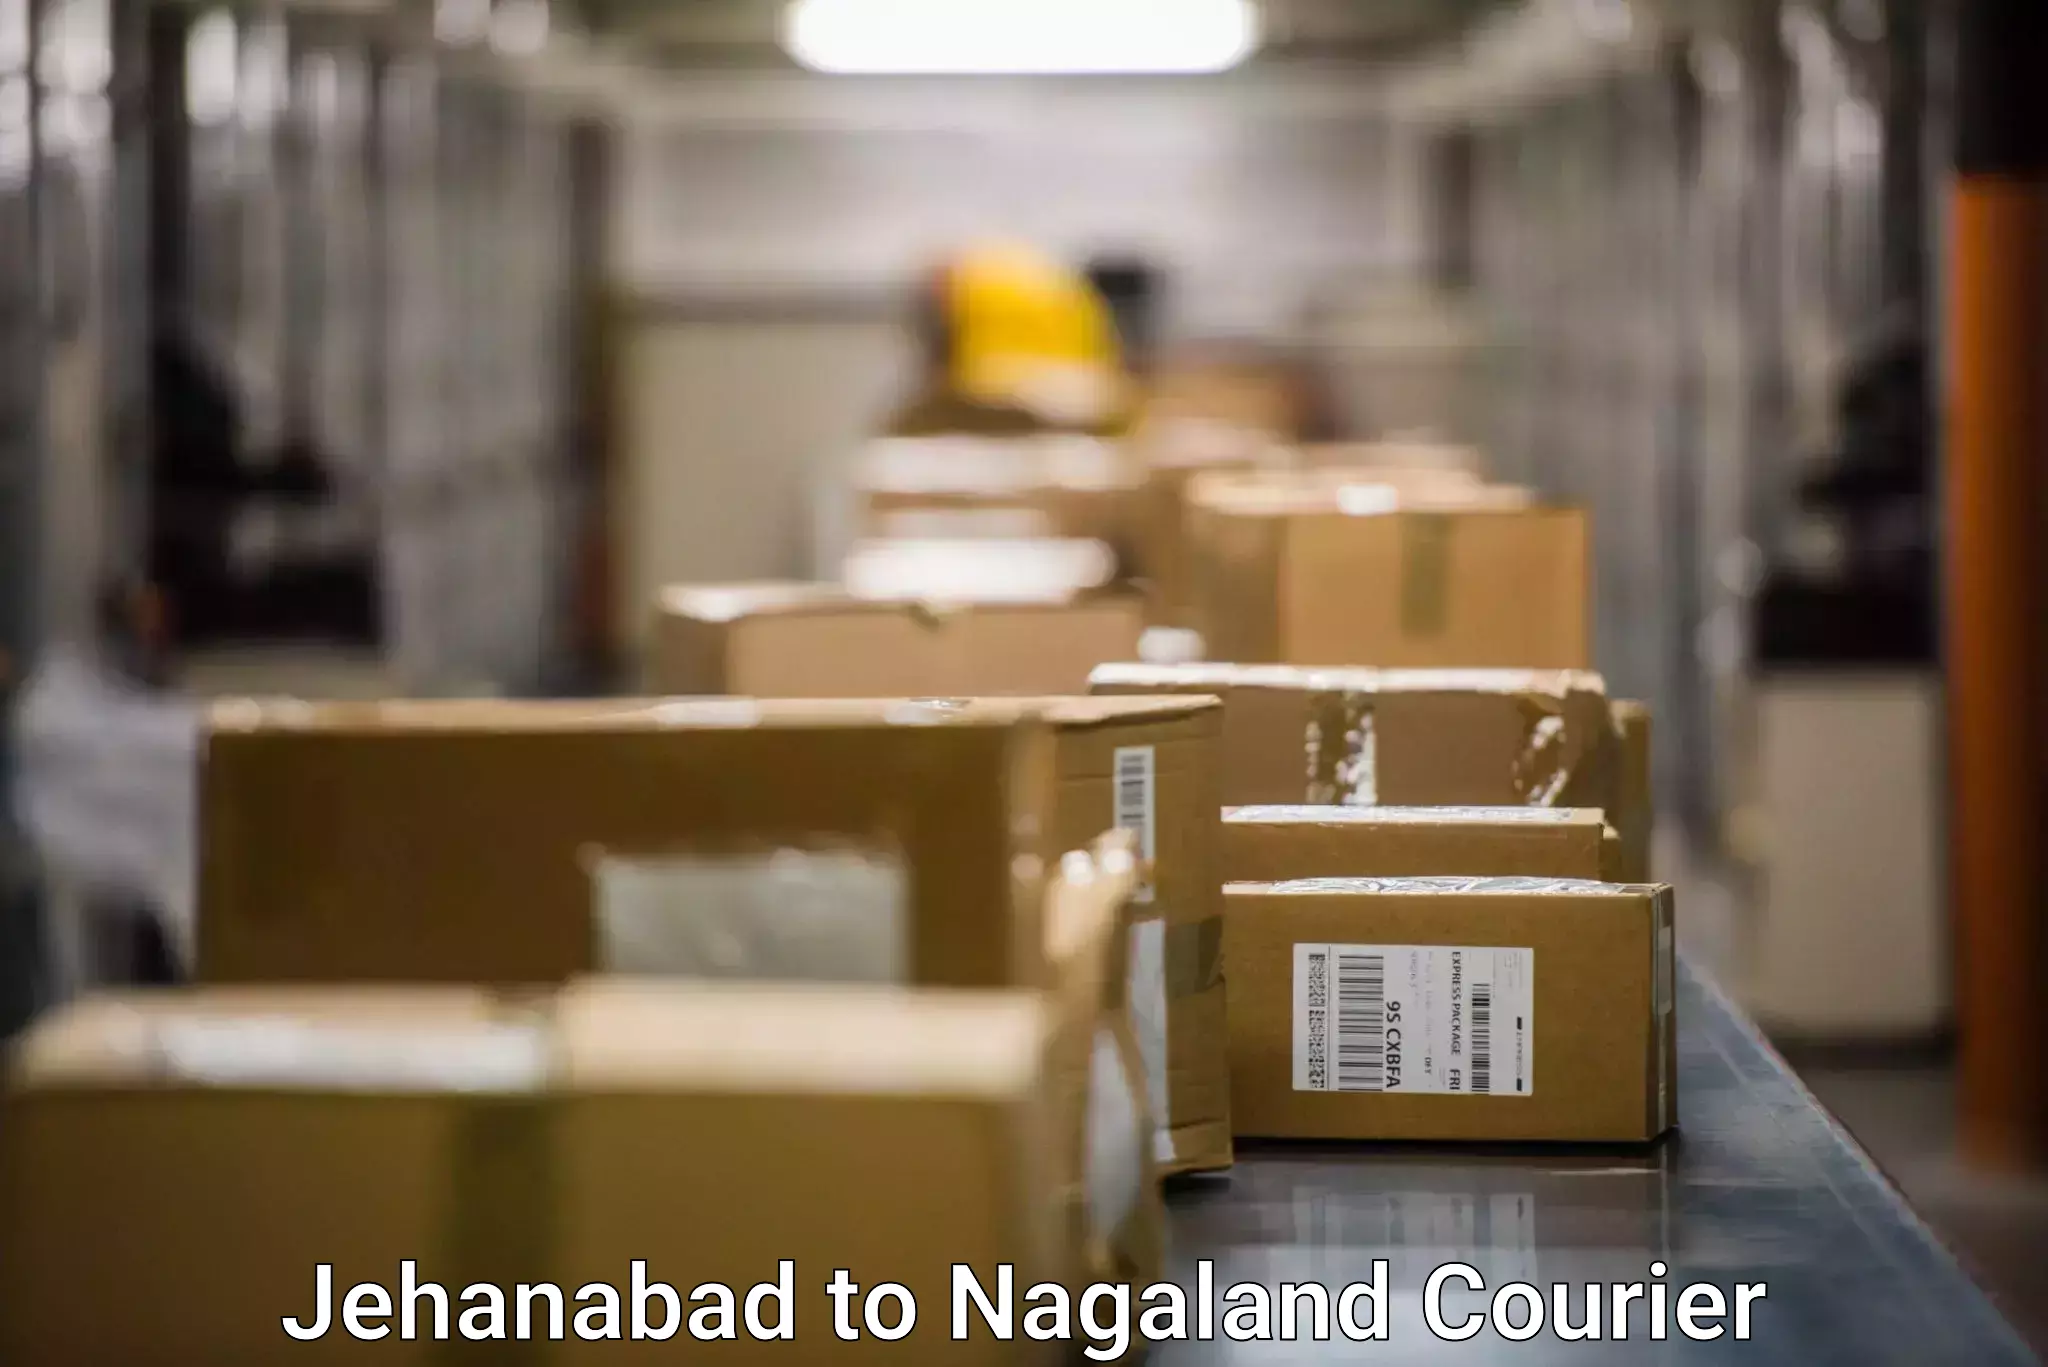 Shipping and handling Jehanabad to NIT Nagaland